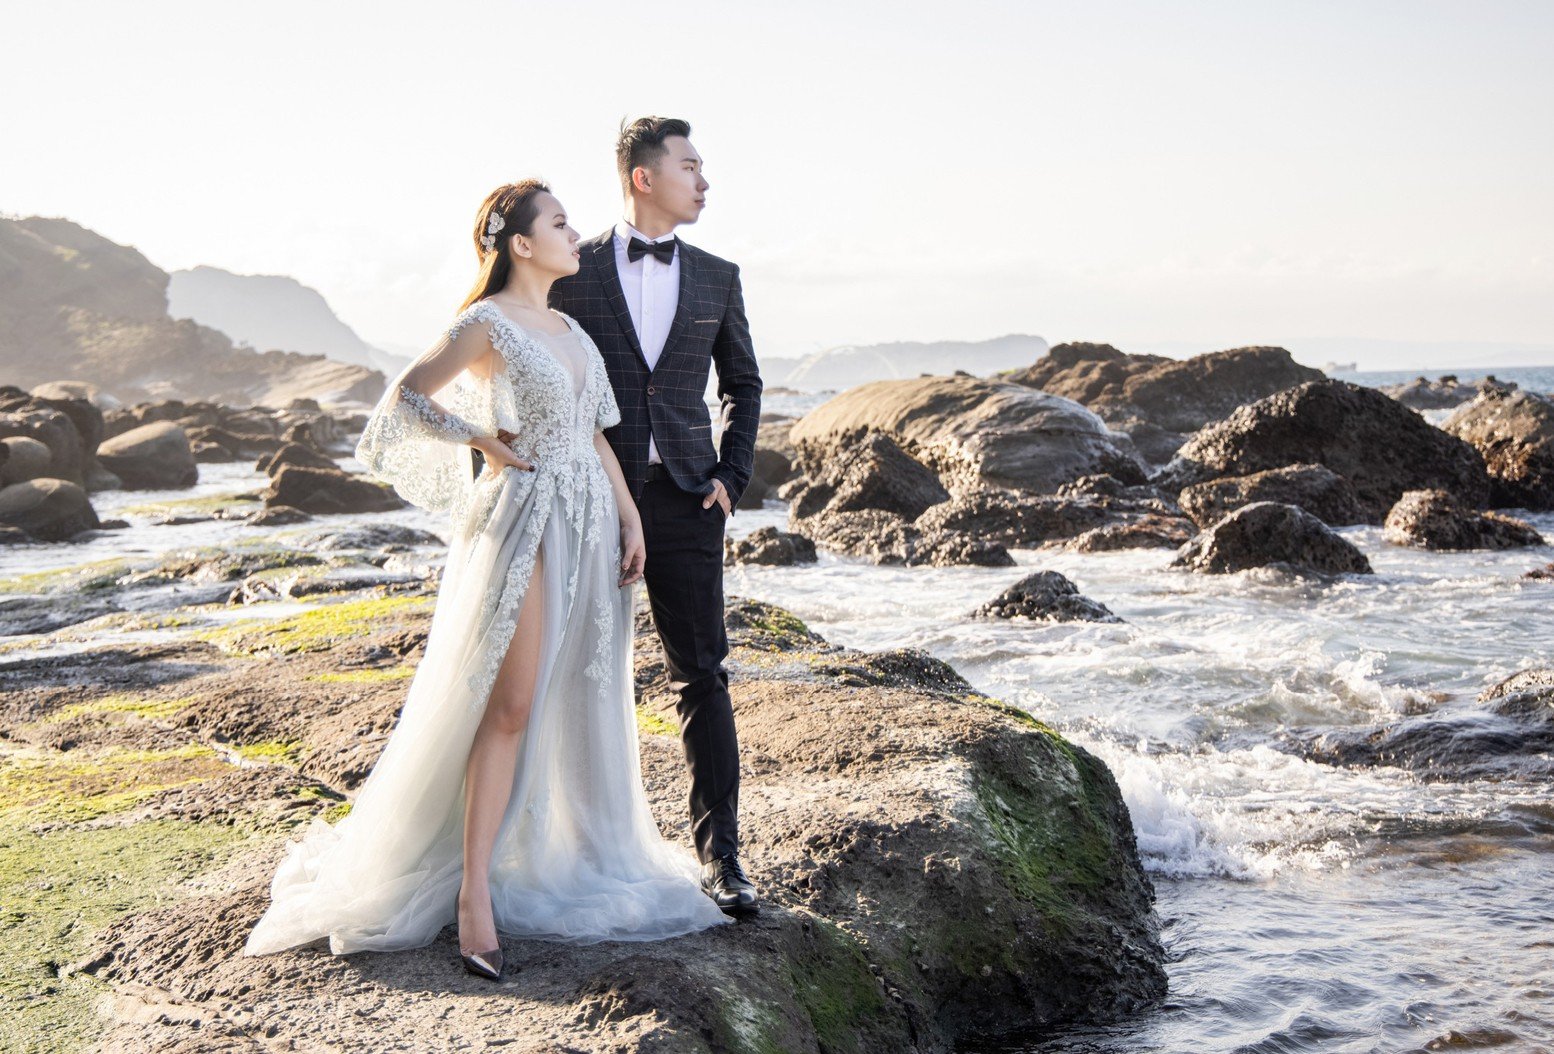 甚麼都不用多說 新娘們就是一定要選---->Amber Wedding 攝影工作室-婚禮廠商評價